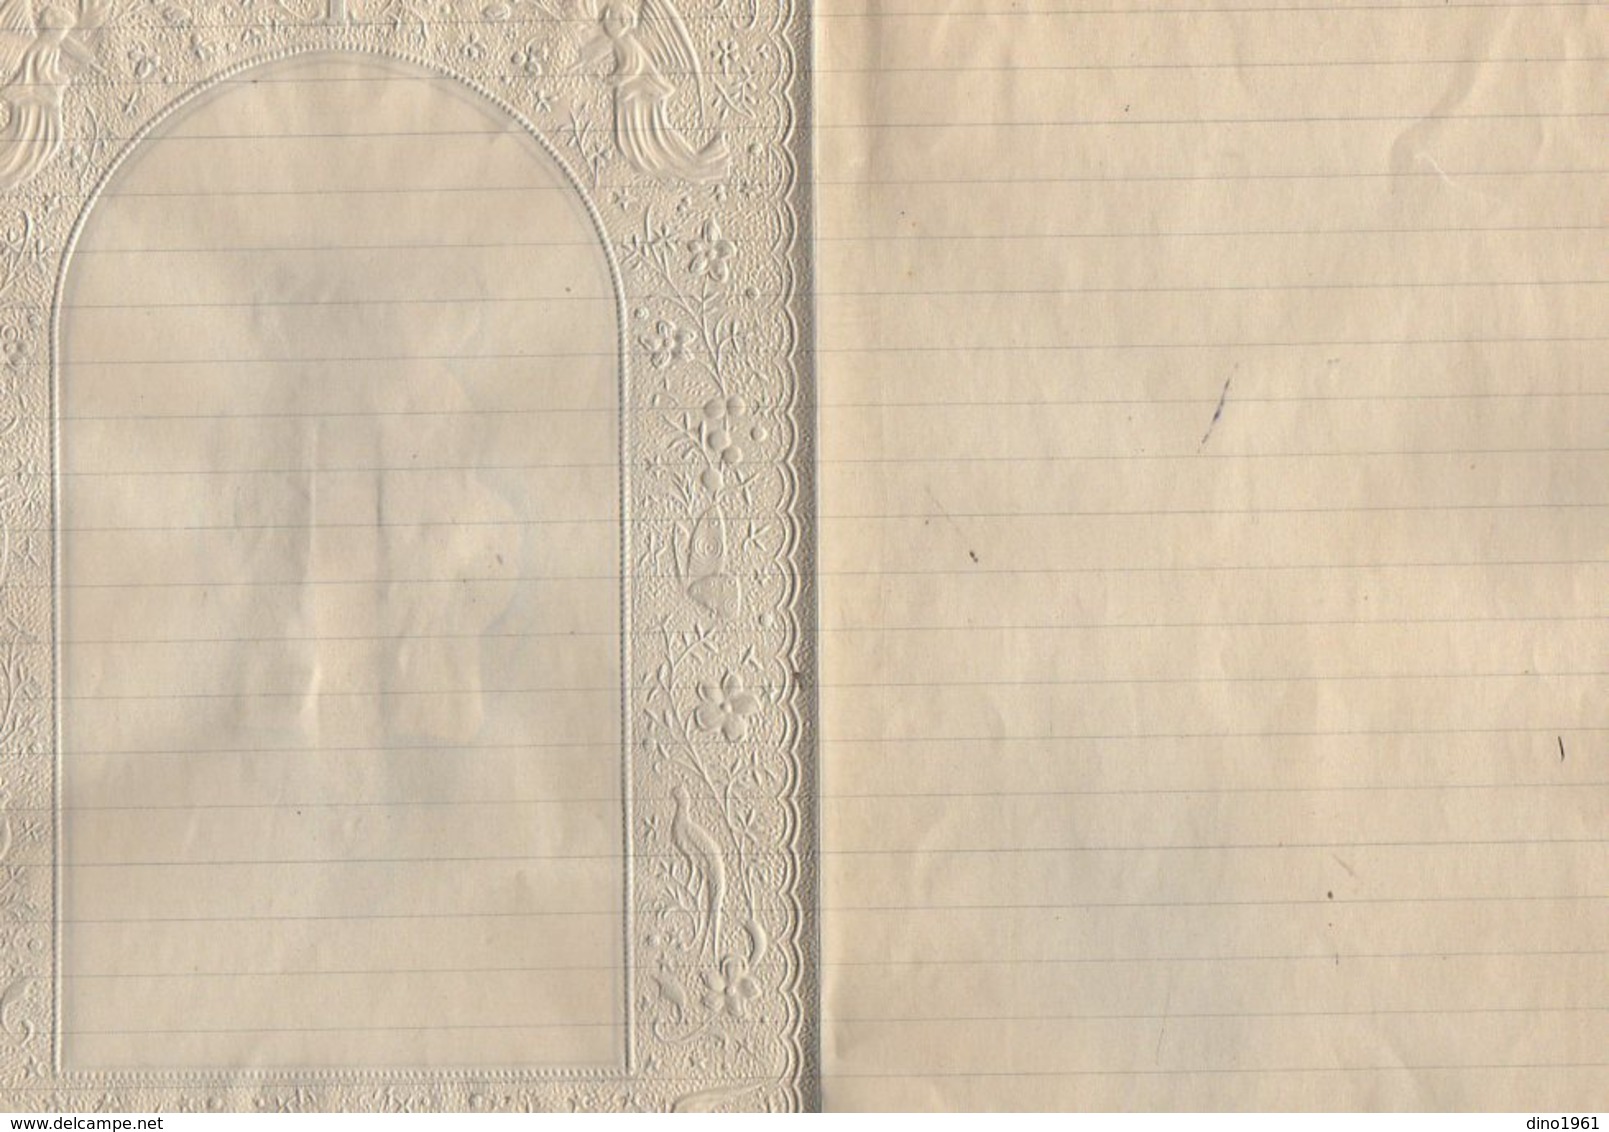 VP17.040 - Lettre - Superbe Papier Lettre Gaufré Anges & Découpi Image Religieuse - Anges